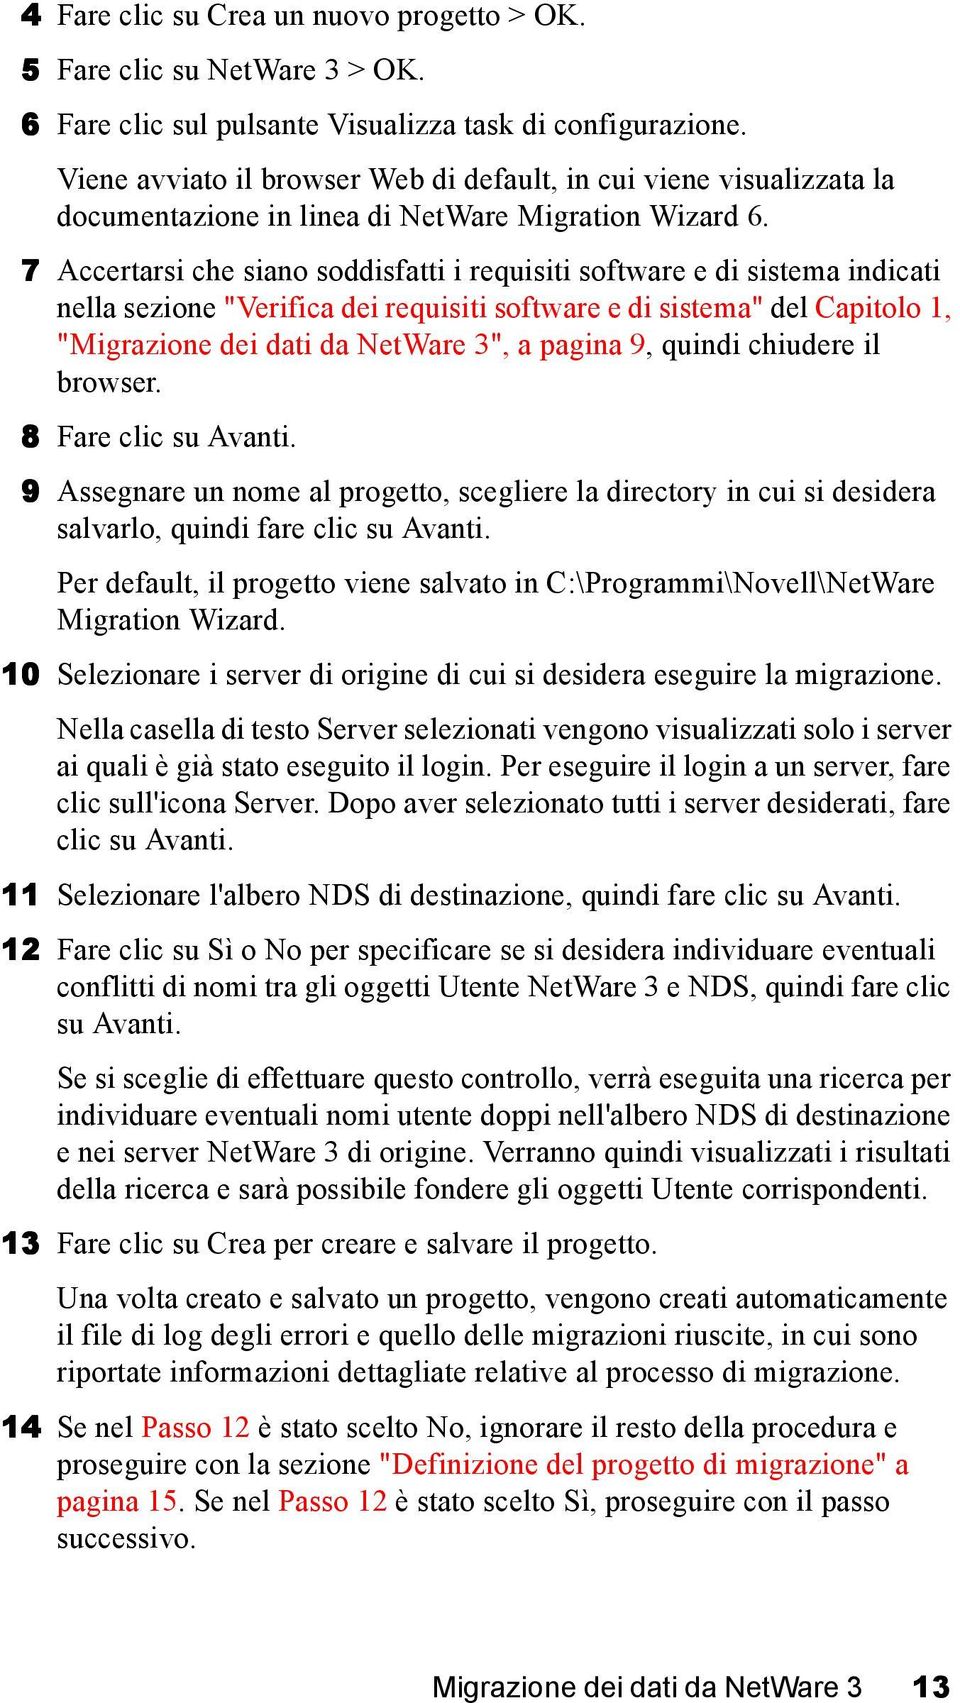 7 Accertarsi che siano soddisfatti i requisiti software e di sistema indicati nella sezione "Verifica dei requisiti software e di sistema" del Capitolo 1, "Migrazione dei dati da NetWare 3", a pagina